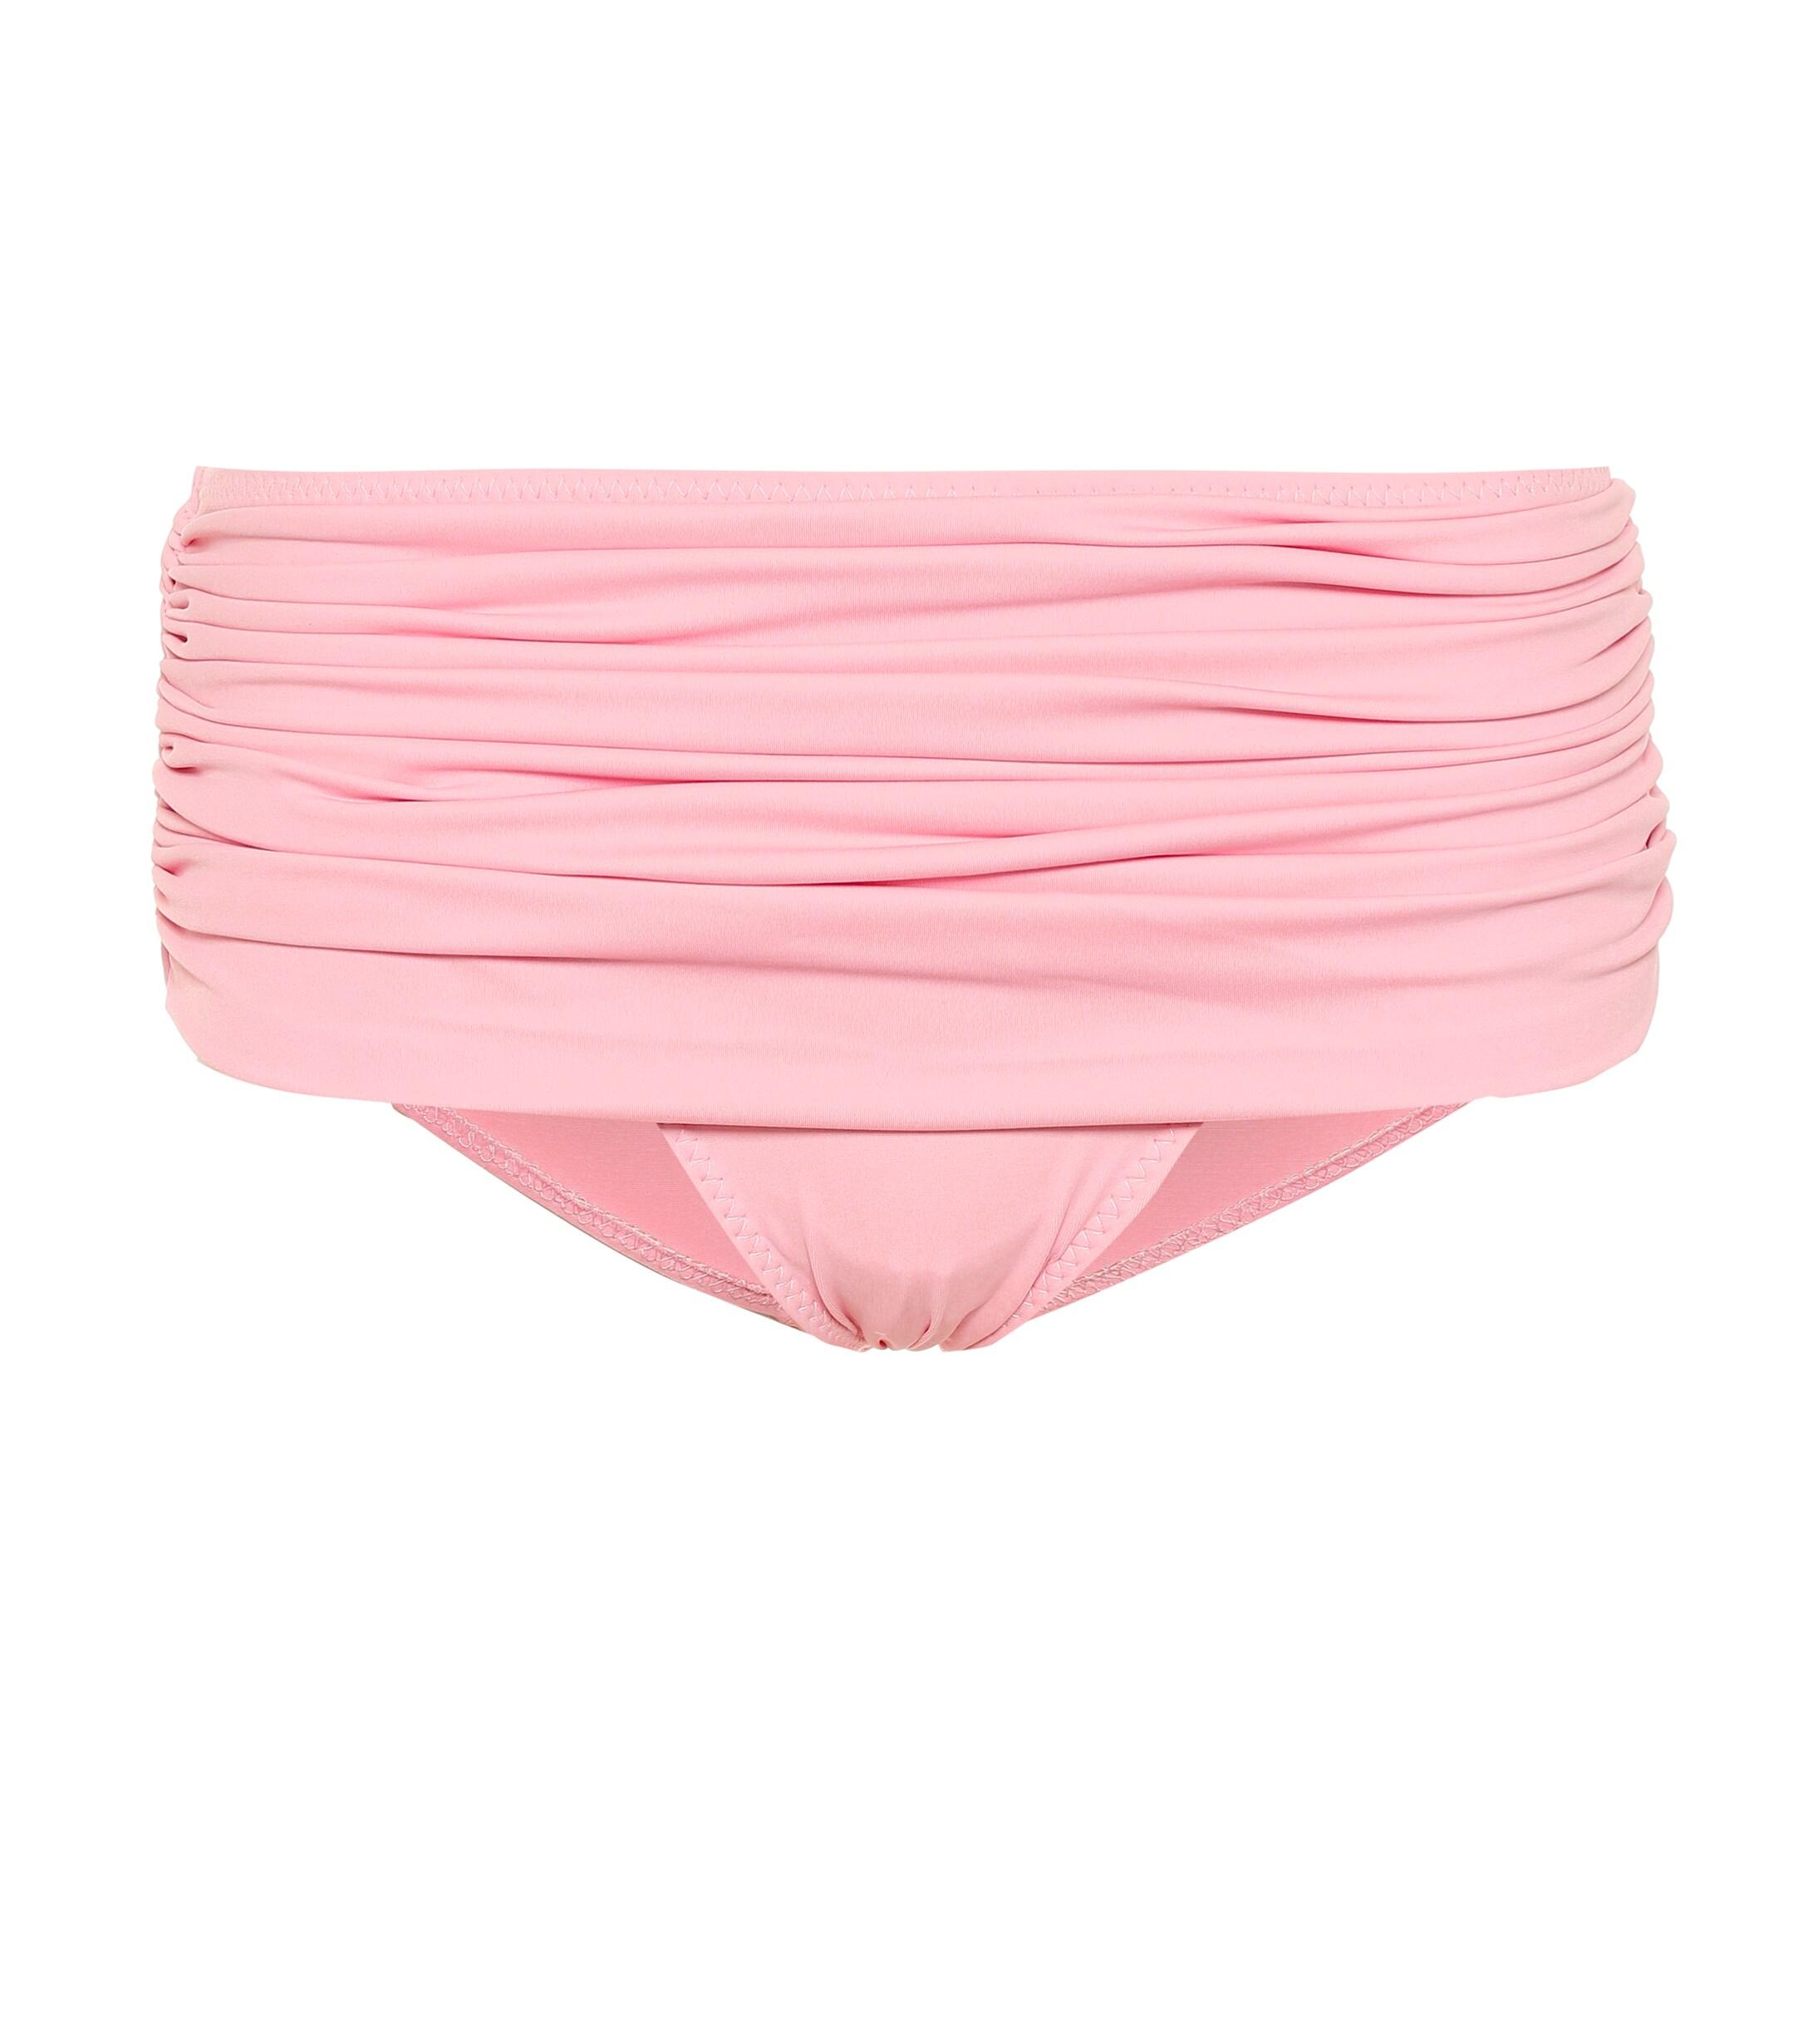 Norma Kamali Johnny D Bikini Top in Pink - Lyst